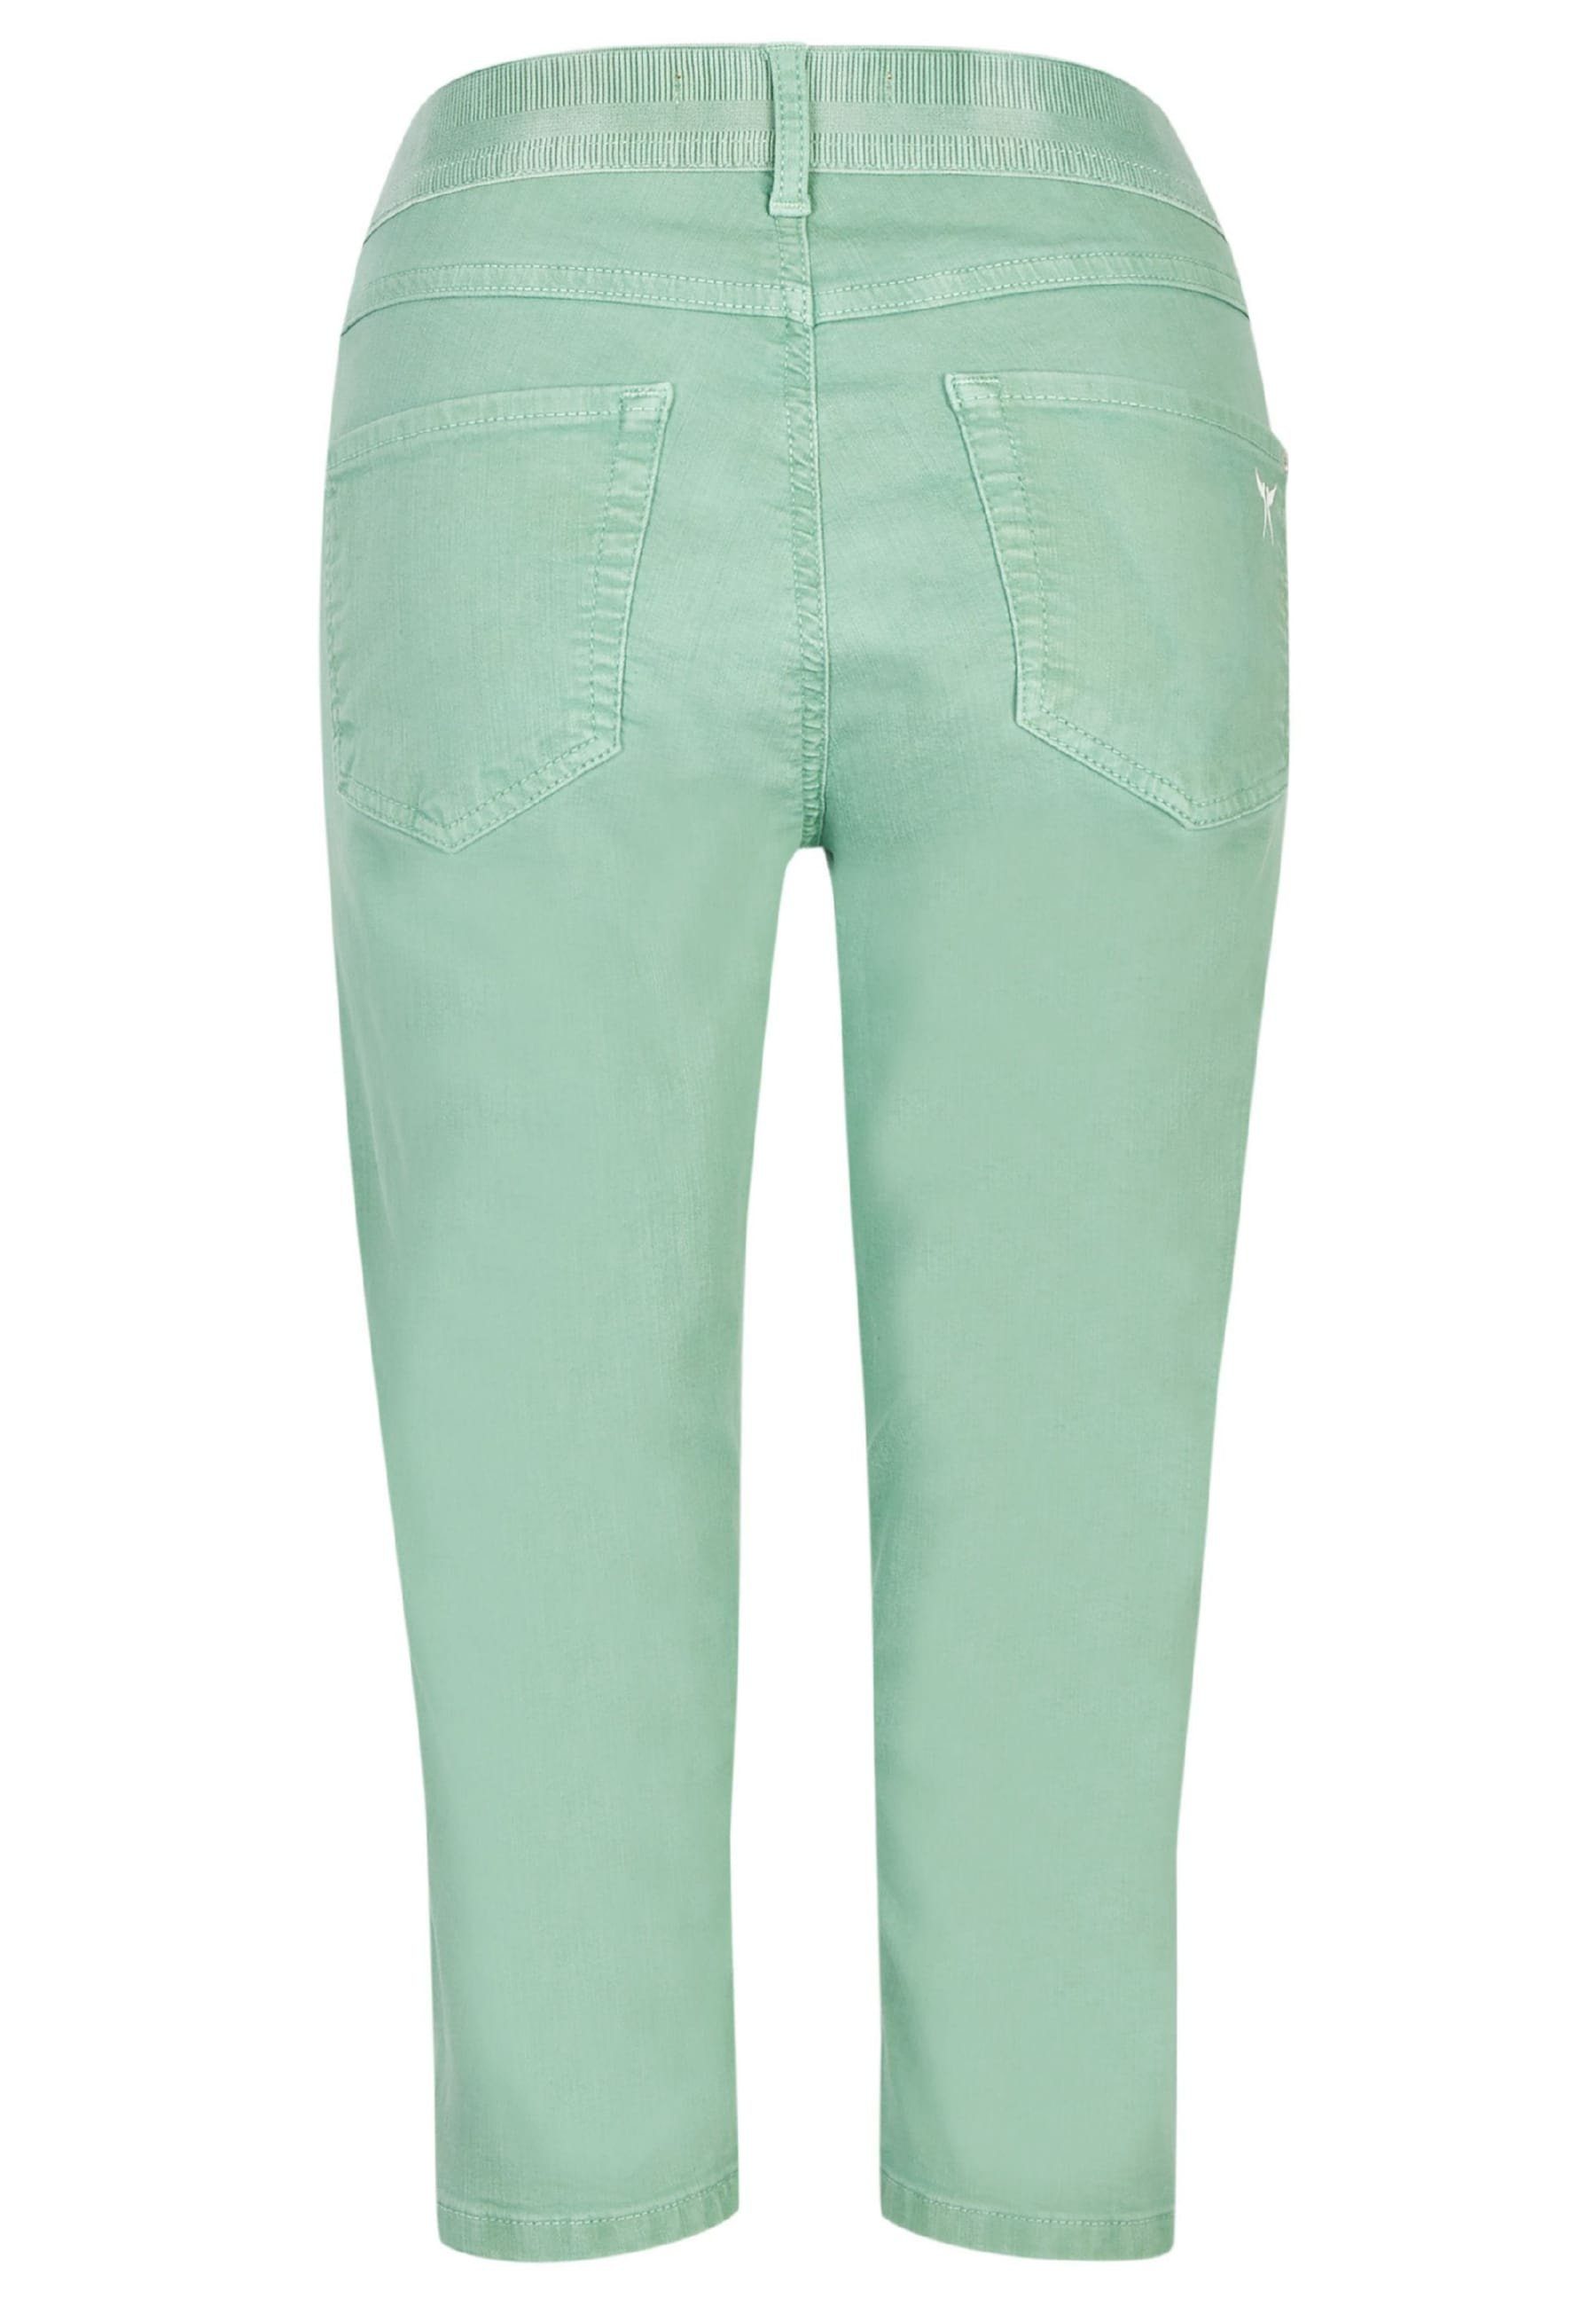 Denim Label-Applikationen OSFA ANGELS Coloured grün mit mit Jeans Slim-fit-Jeans Capri